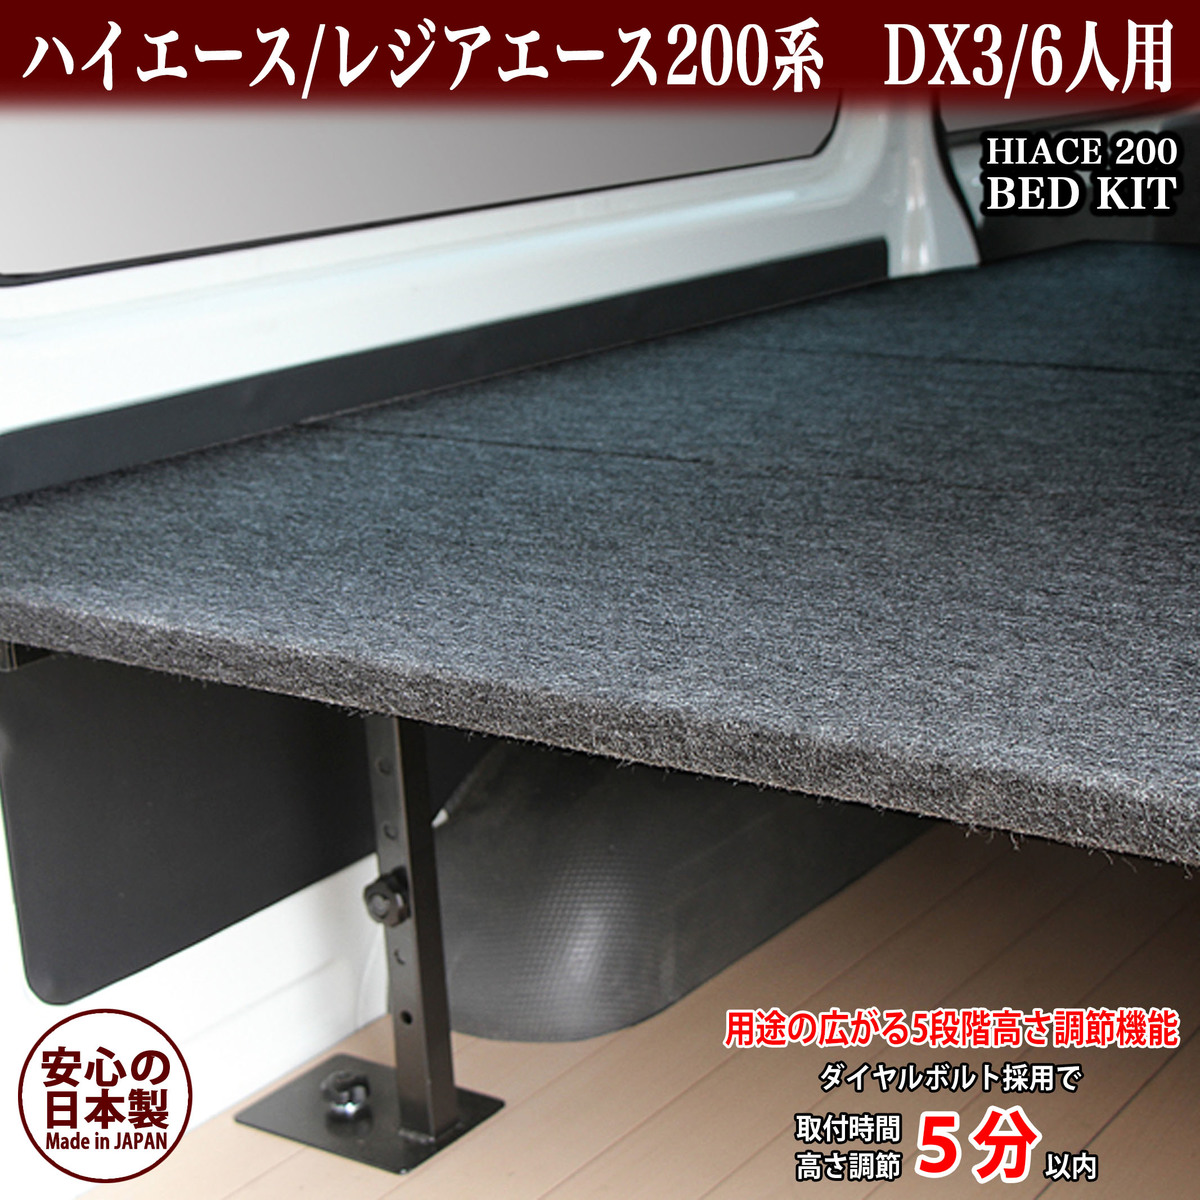 ハイエース ベッドキット DX3/6人用 パンチカーペット #1 フロアマット